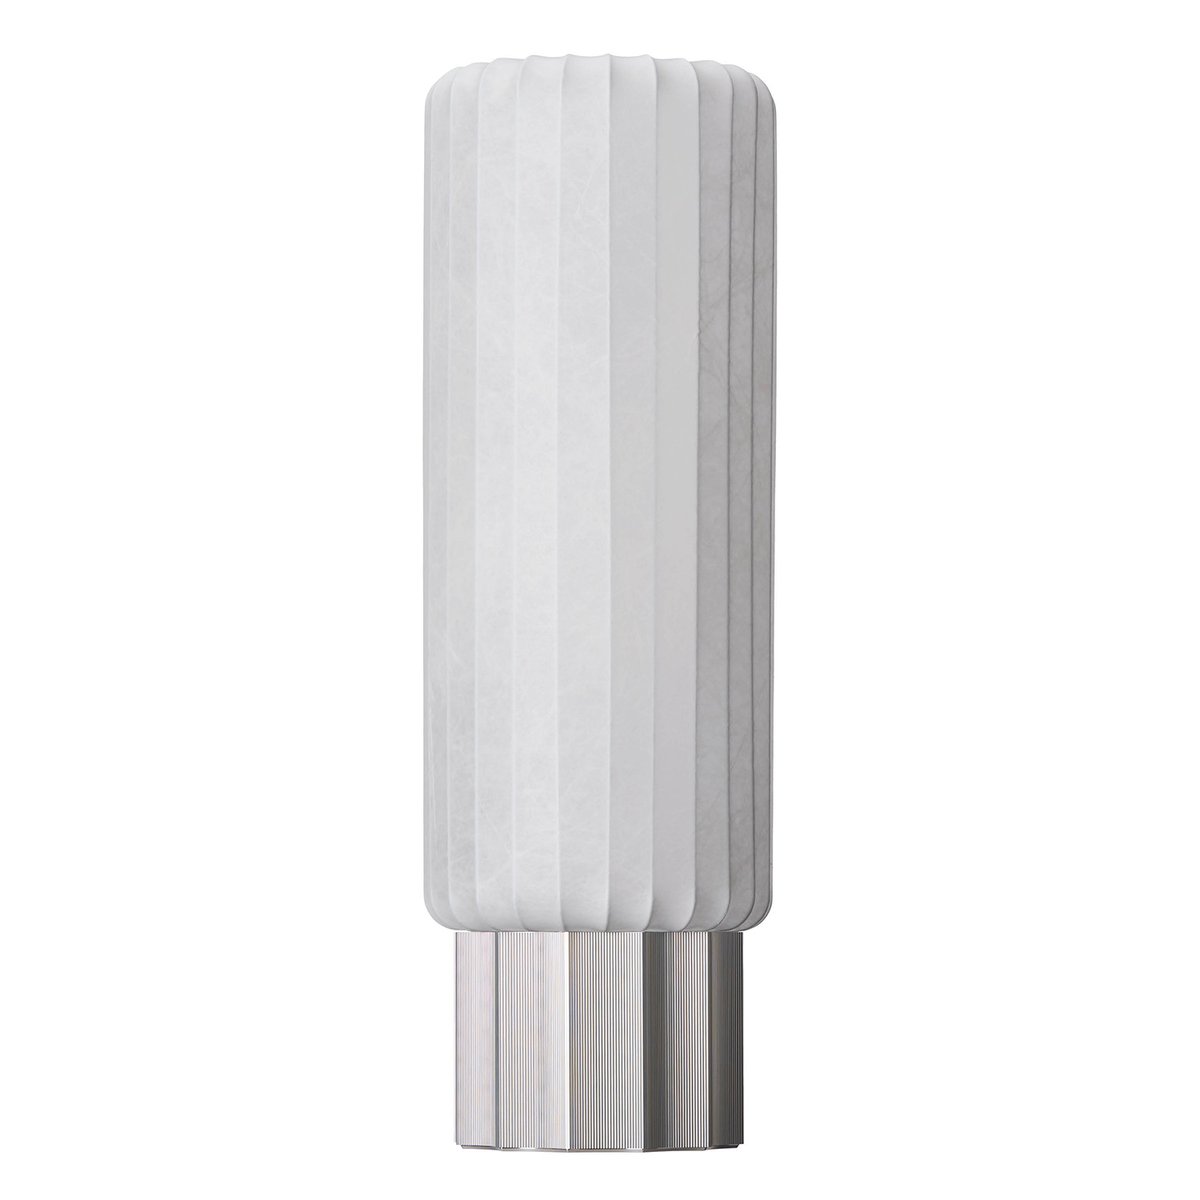 Pholc One Meter tafellamp White